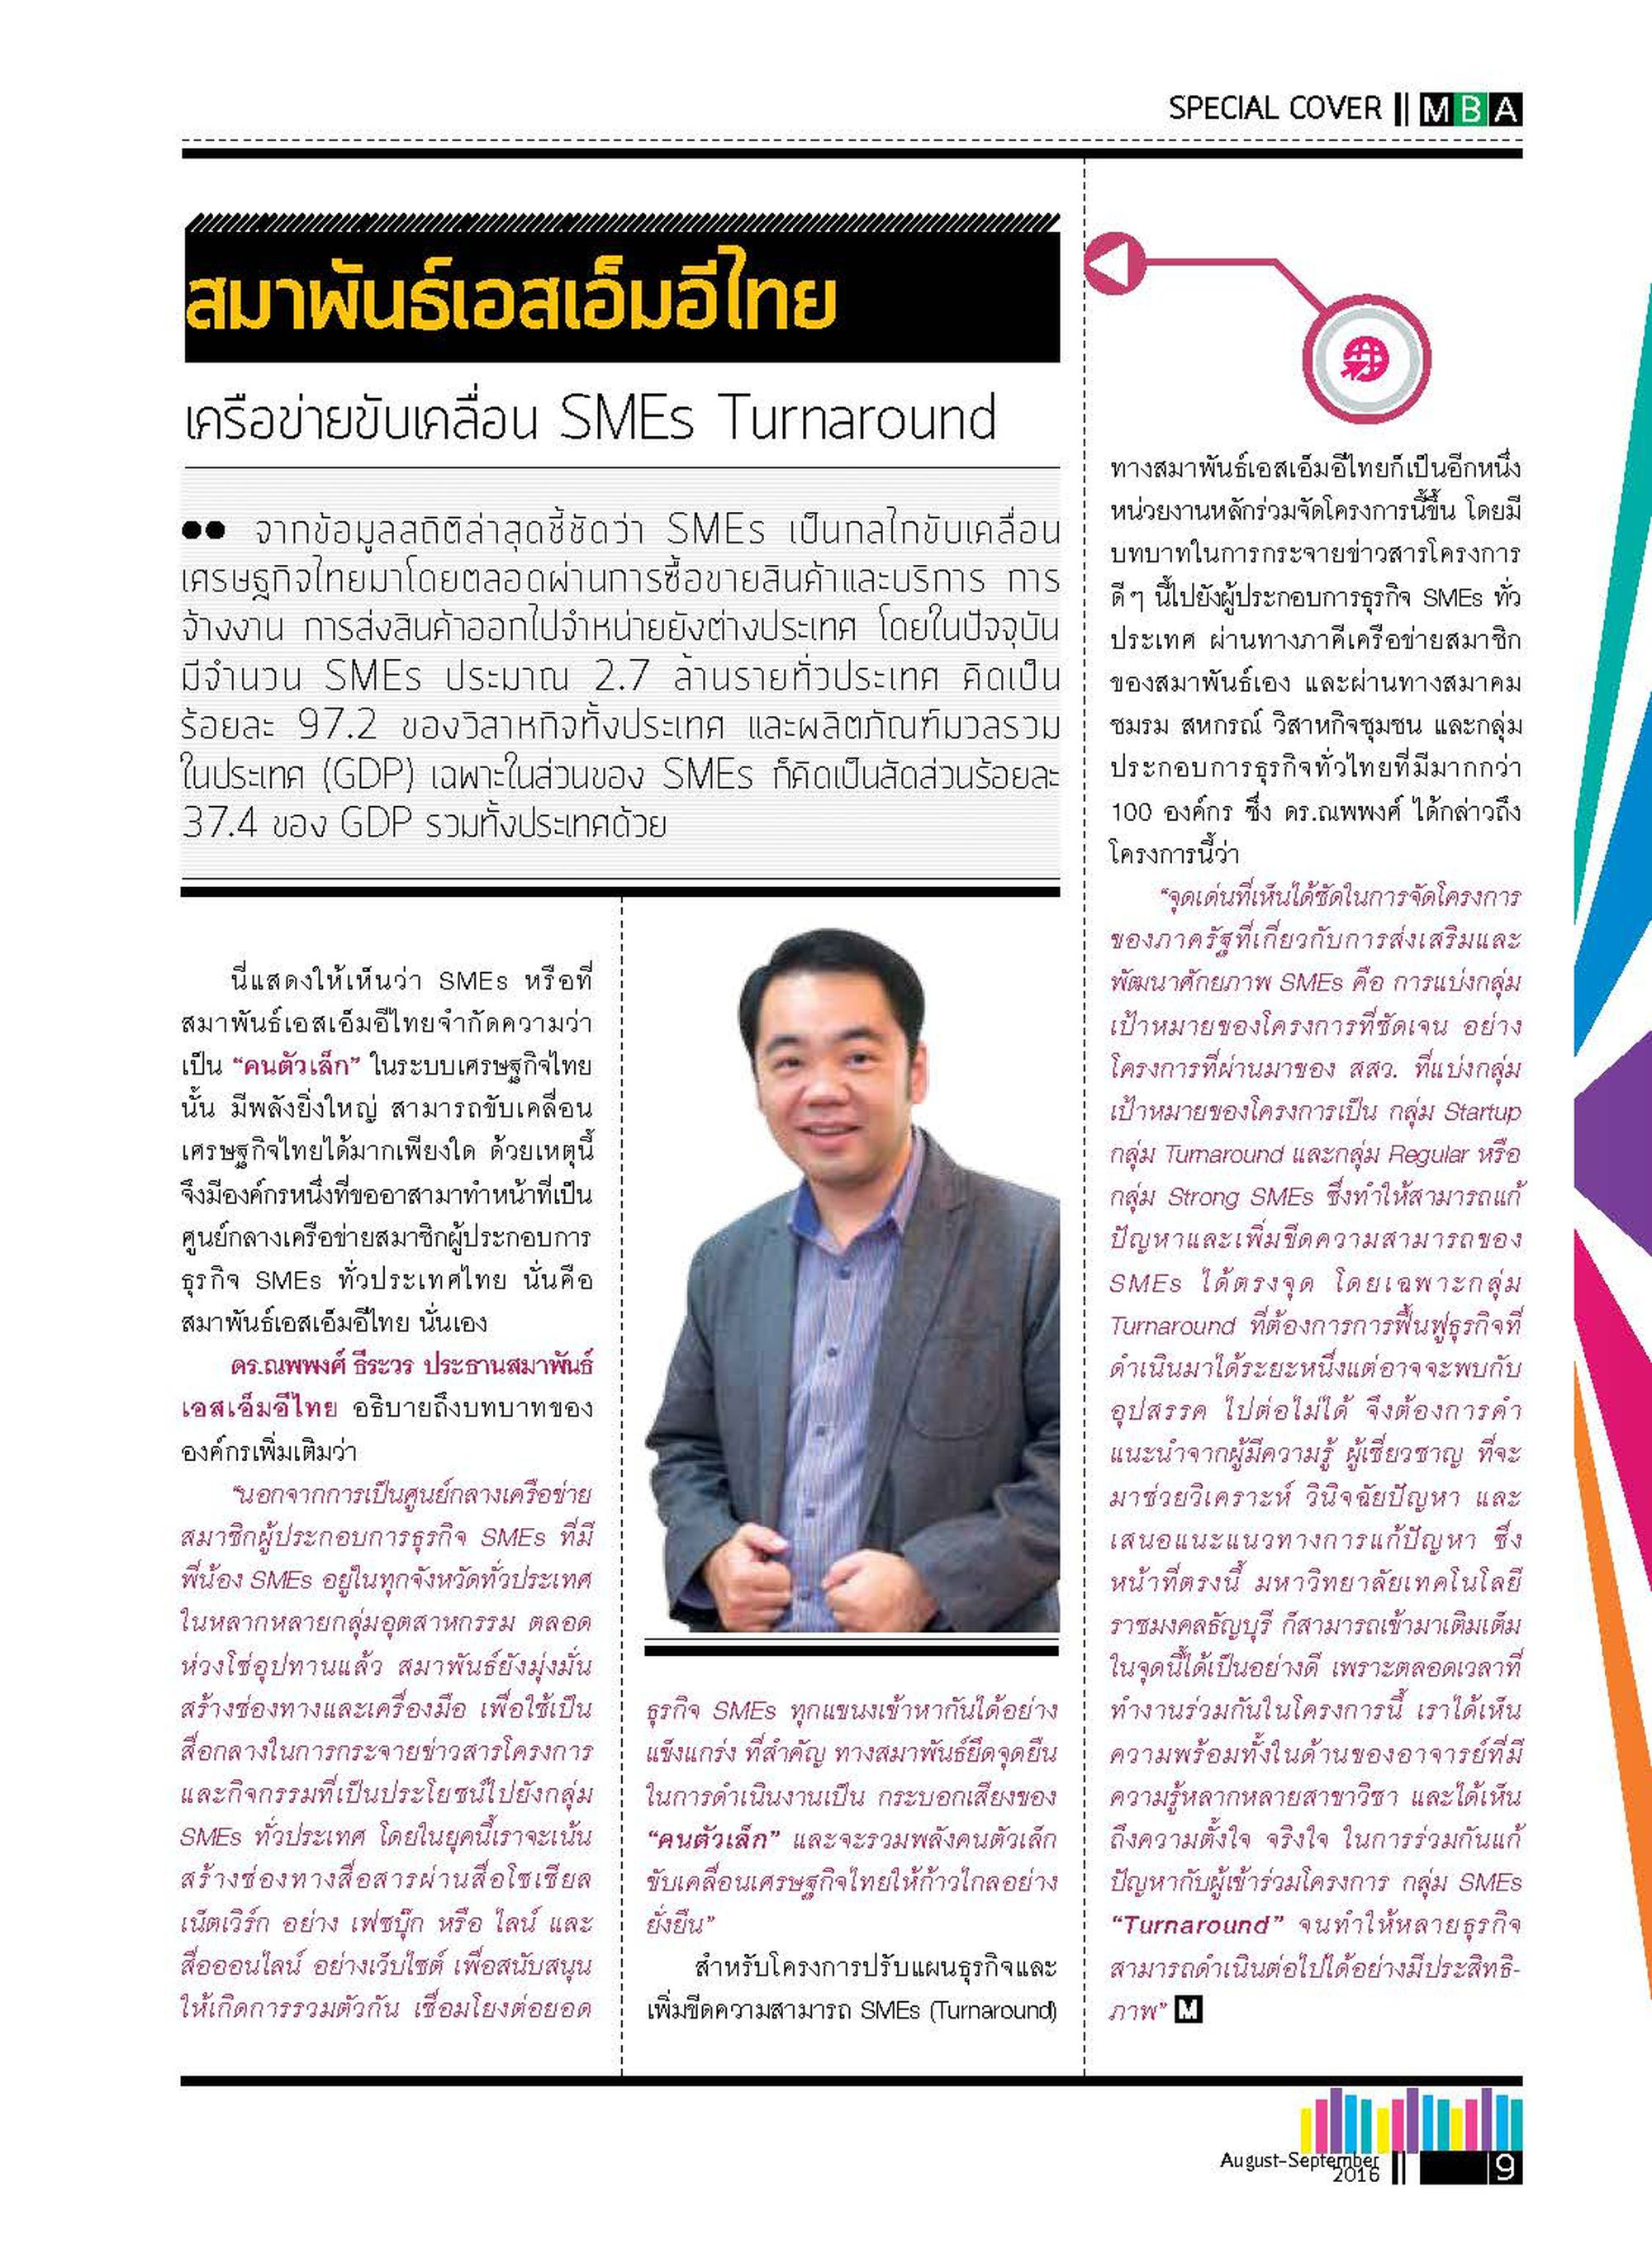 Power Up Thailand SMEs “Turnaround”